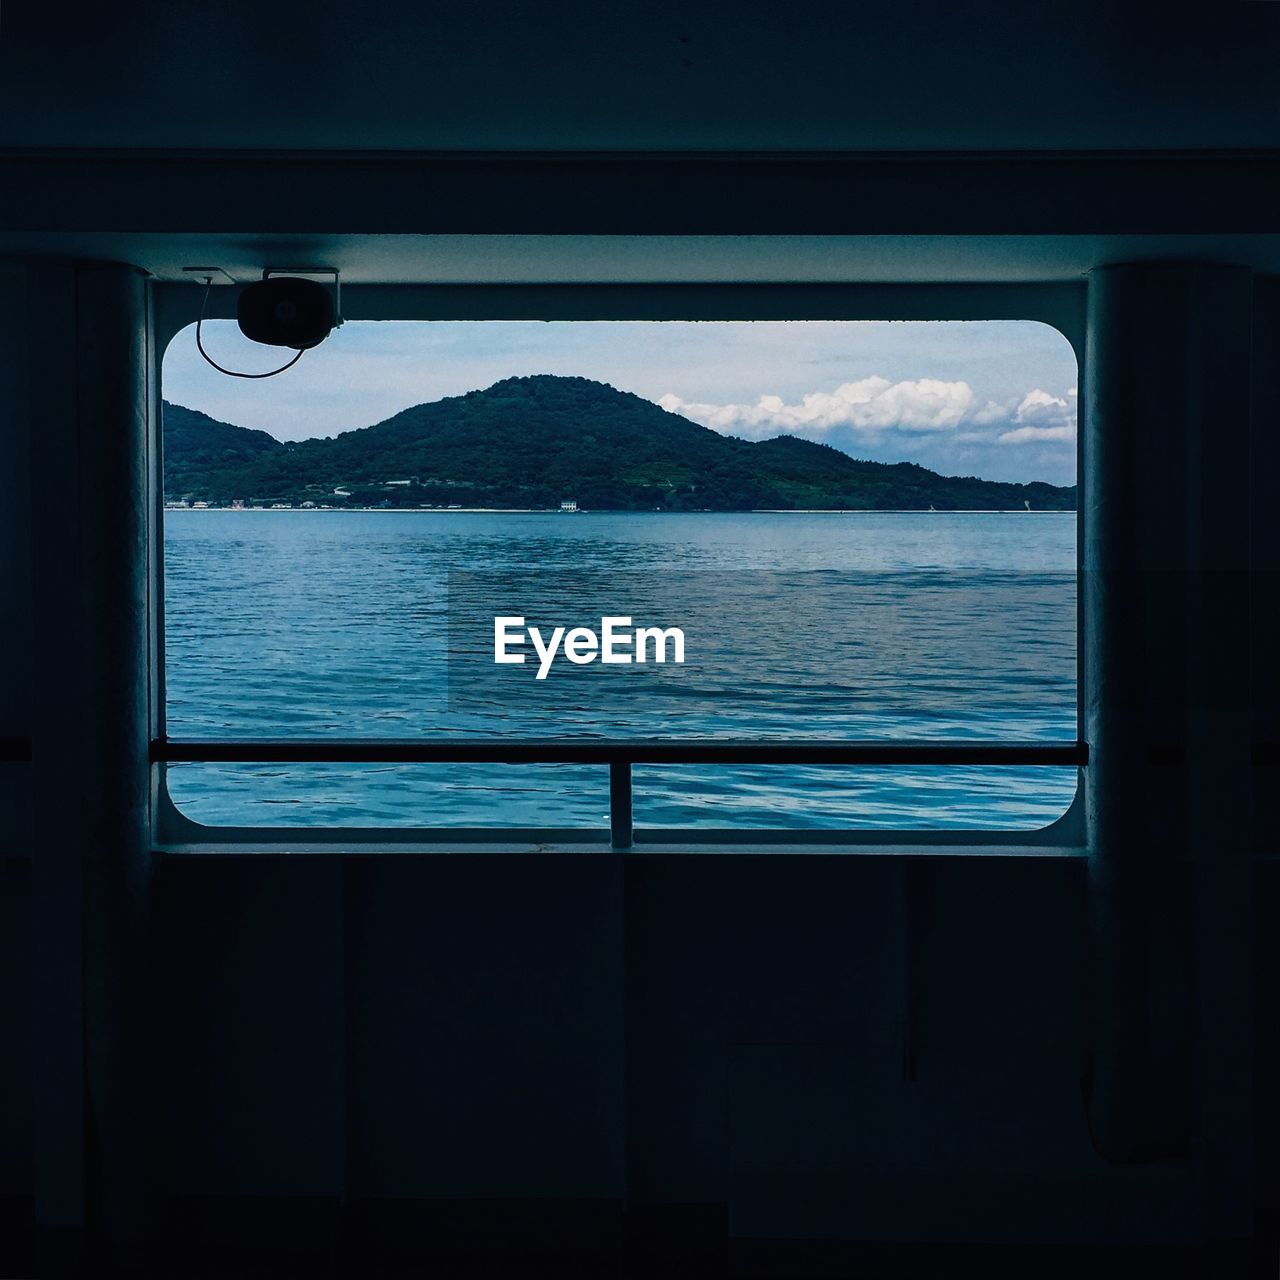 Sea and mountain seen through window of ship